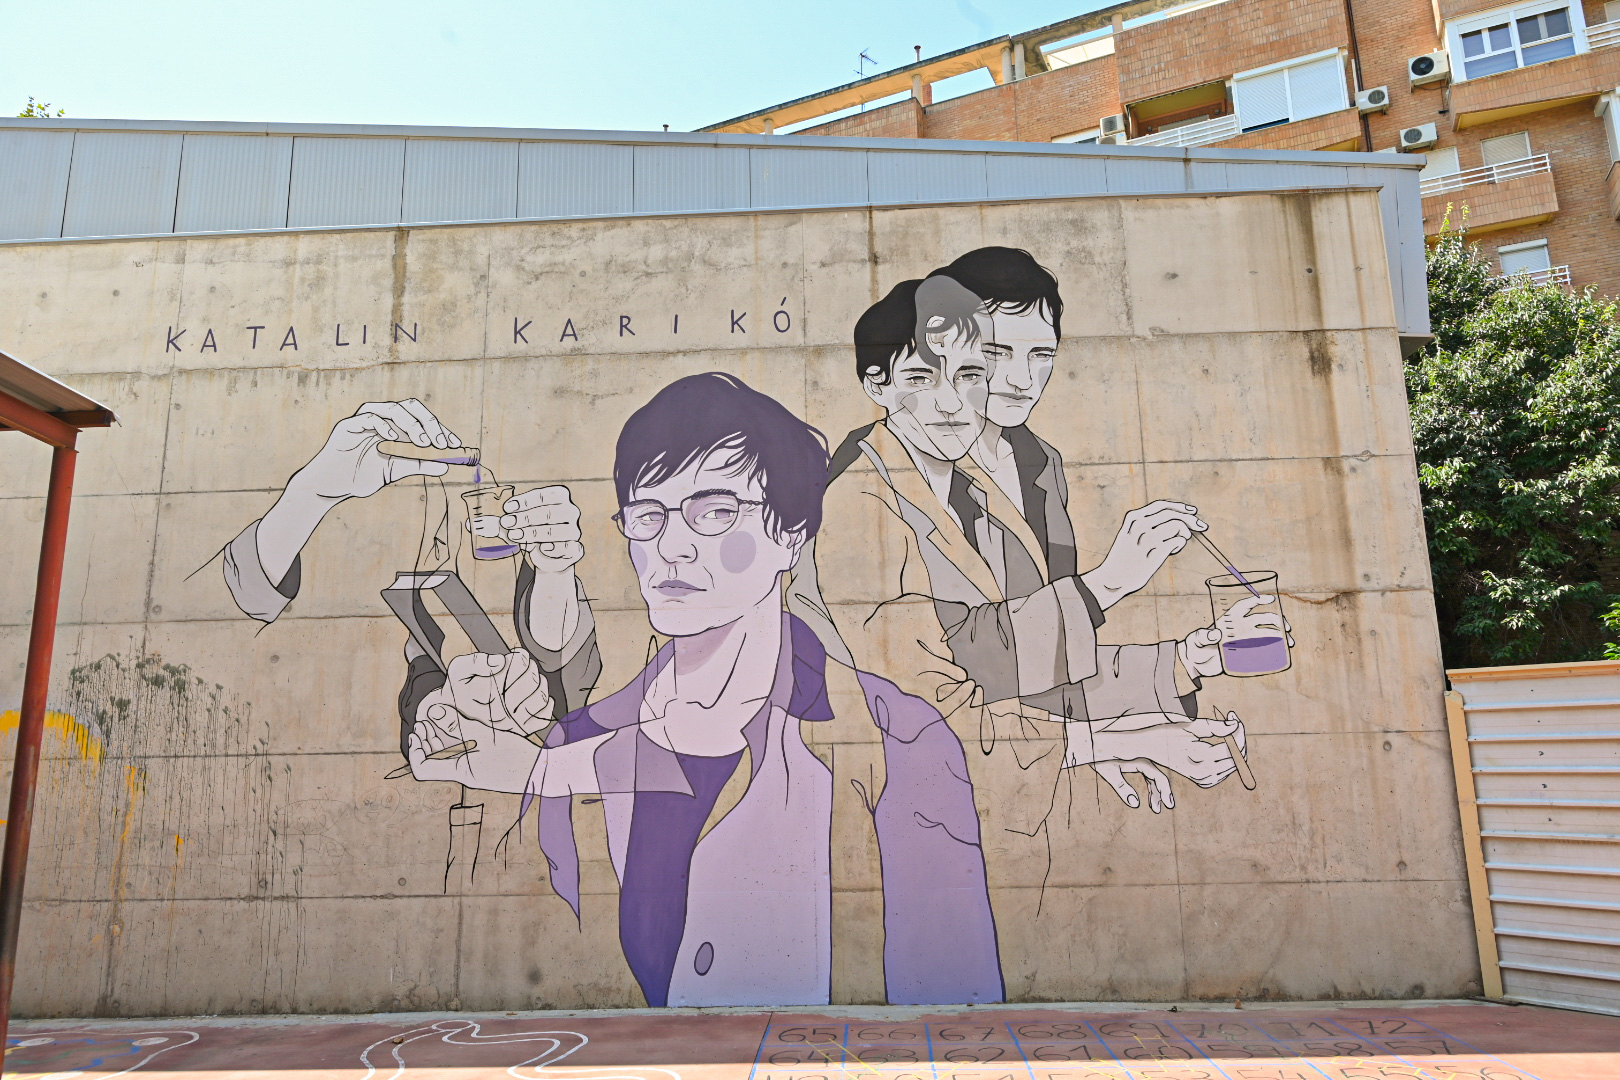 Spain Now Also Has a Karikó Mural